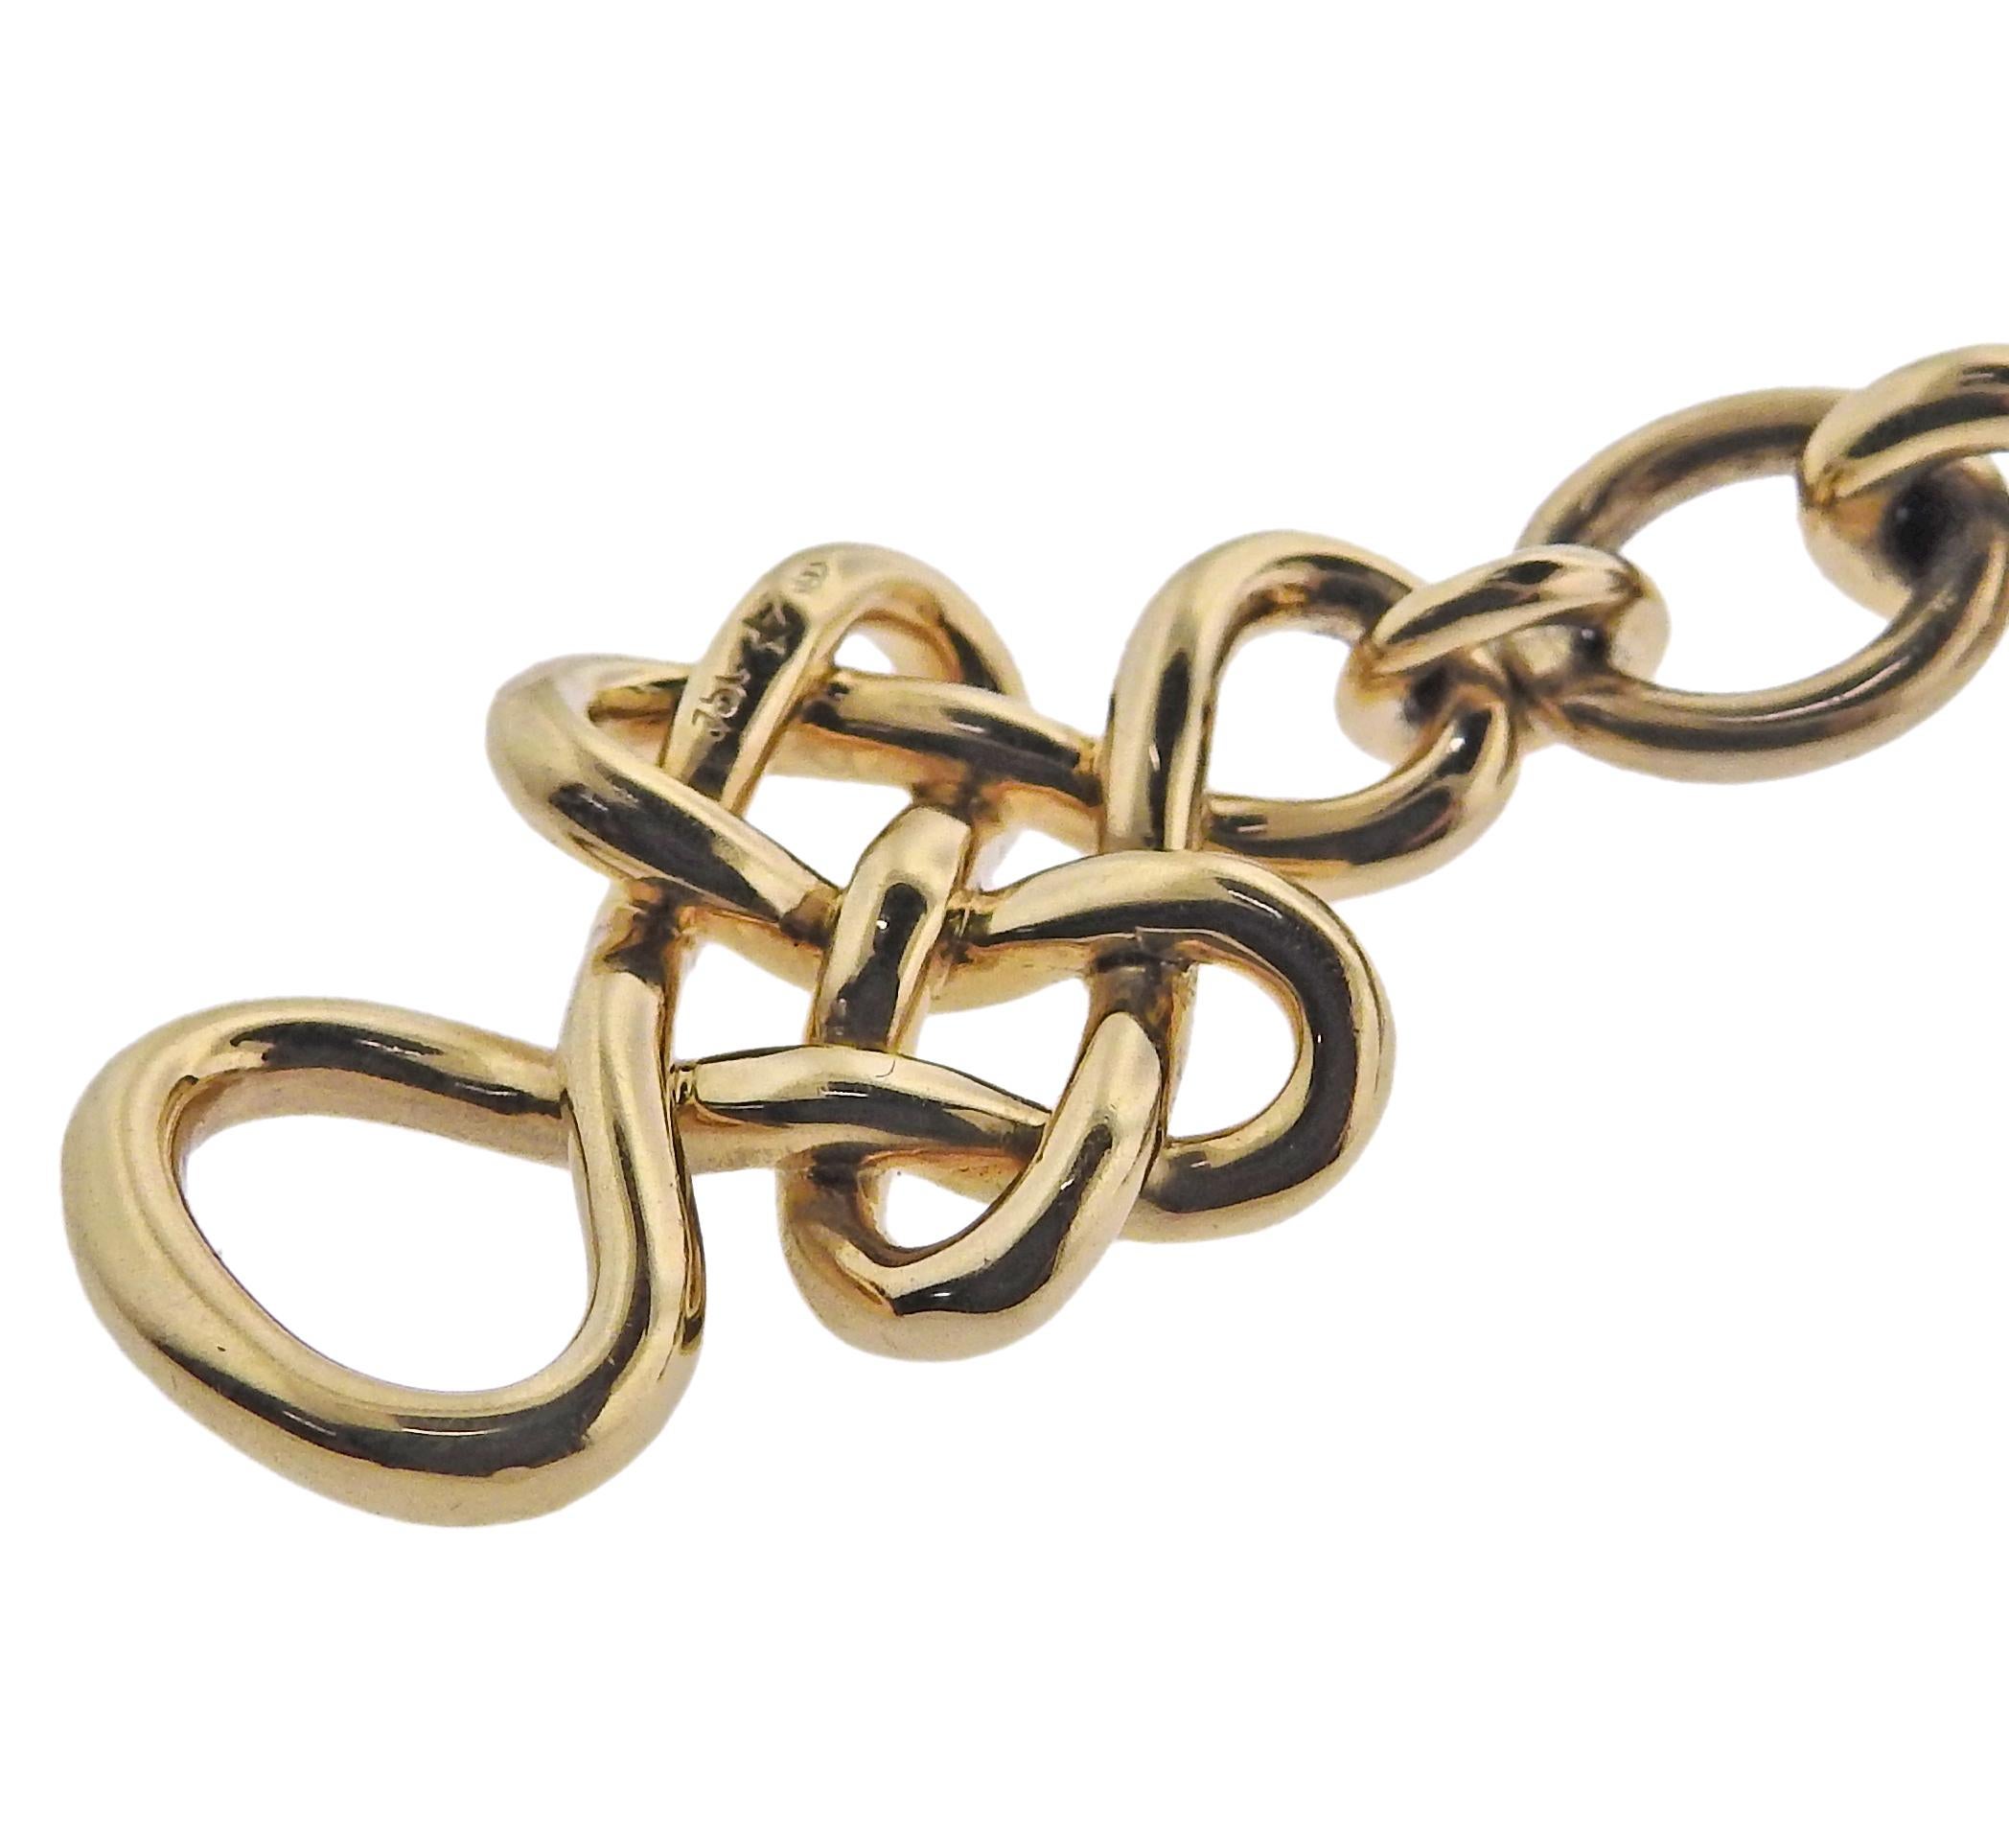 18k gold toggle bracelet by Diane Von Furstenberg for H. Stern, set with rock crystals.  Bracelet is 8.75